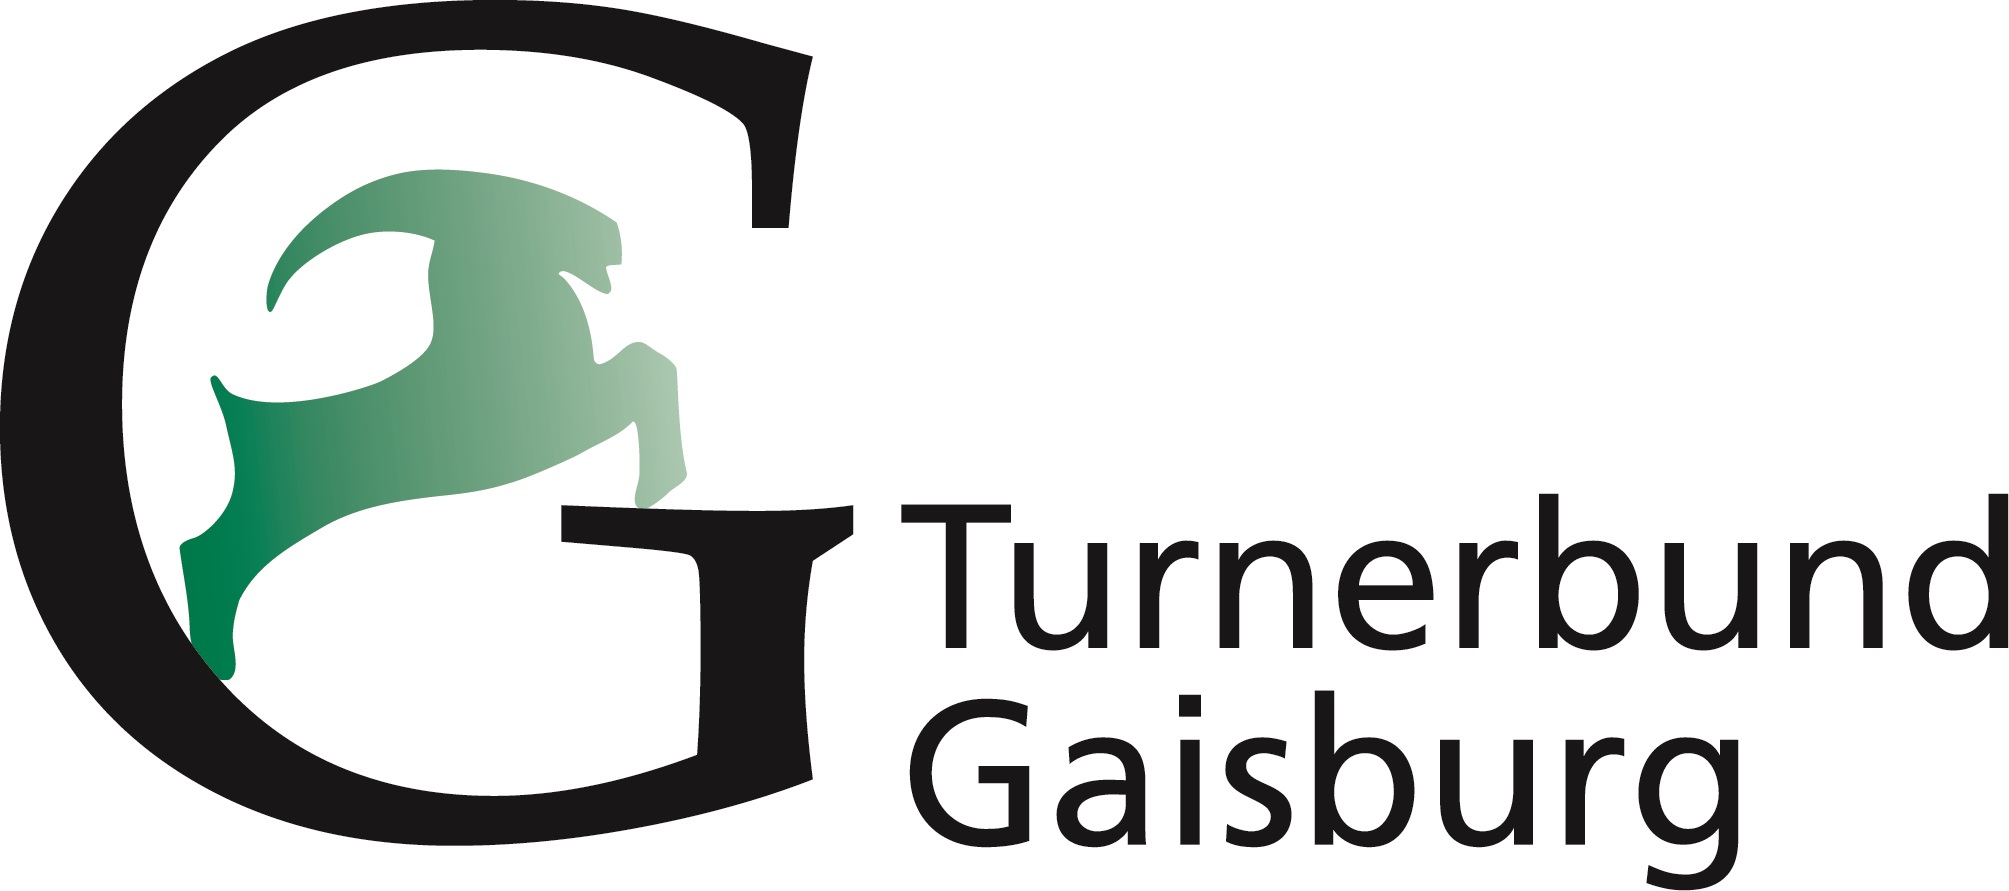 Turnerbund Gaisburg Stuttgart 1886 e.V.